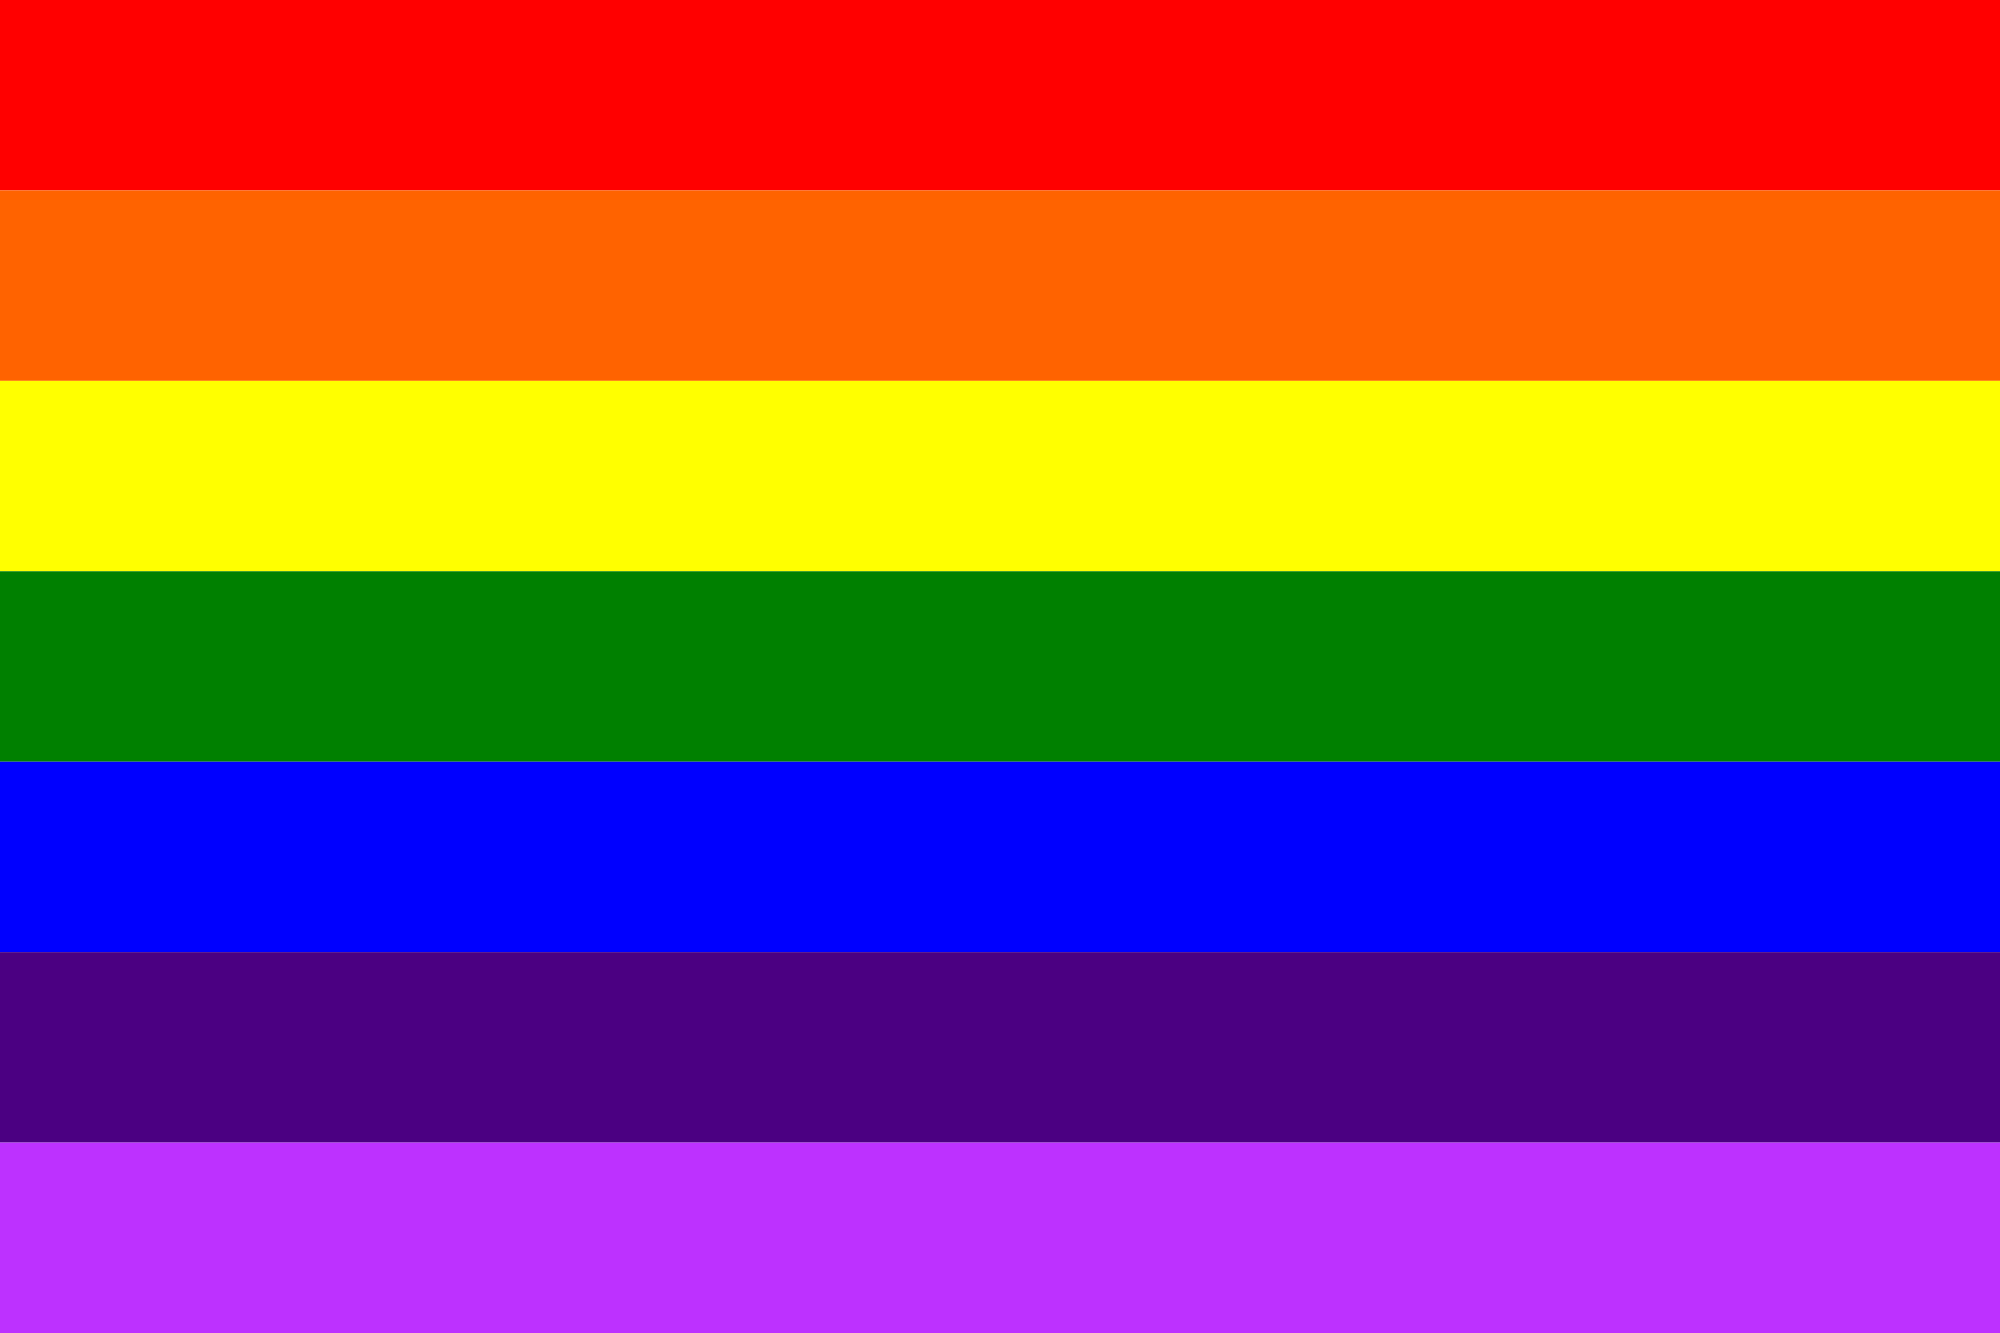 colors in gay pride flag